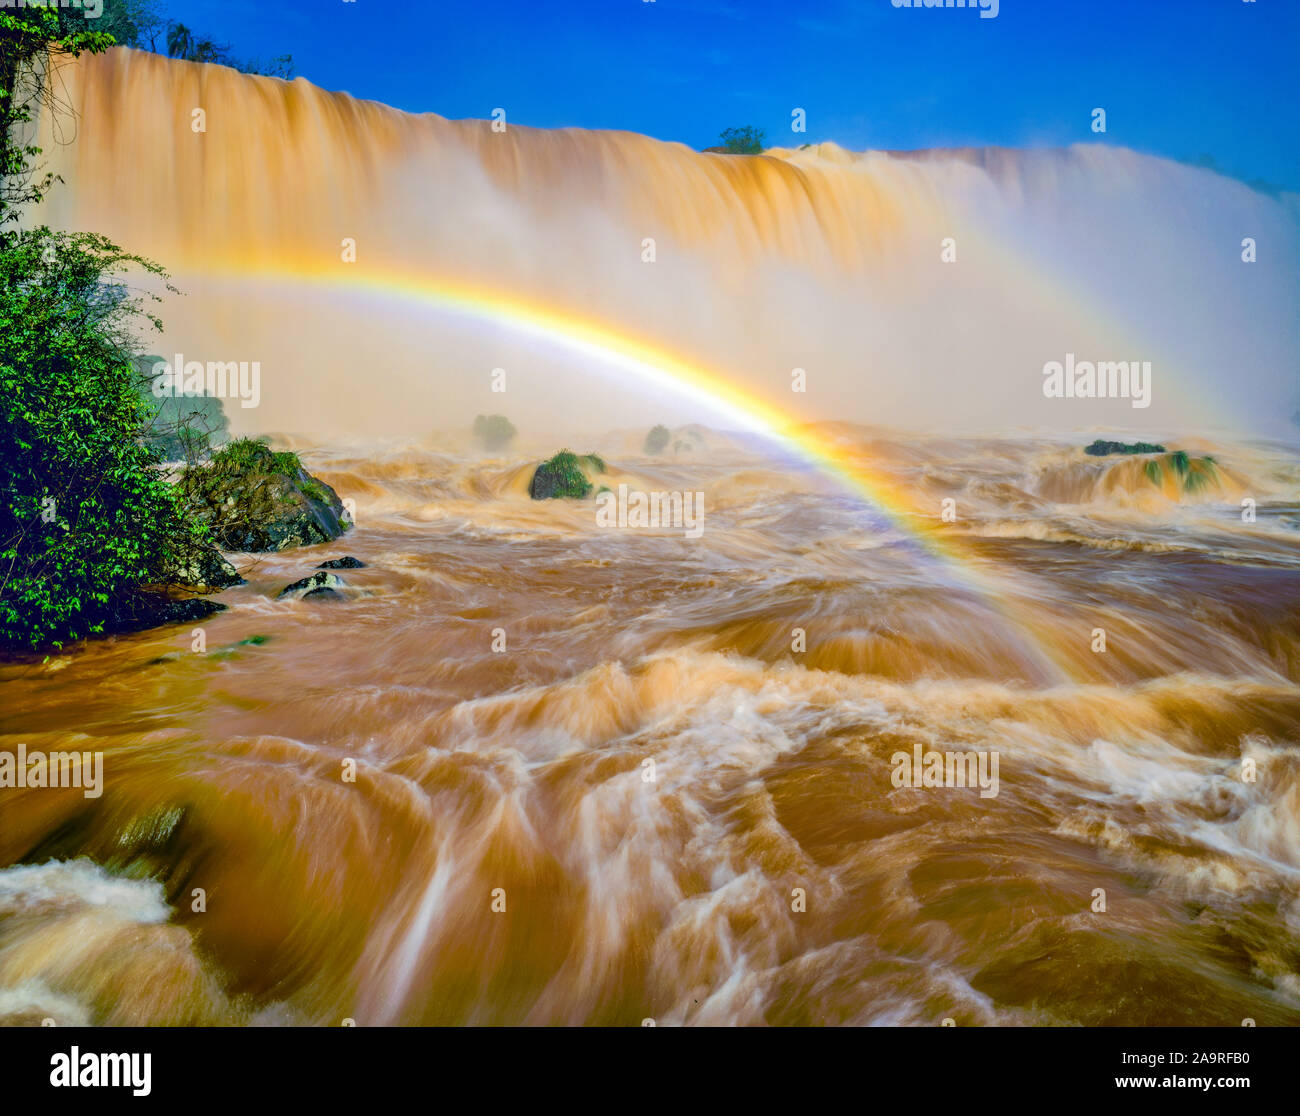 Iguazu Falls rainbow, Iguazu Falls National Park, Brazil,  One of the World's largest waterfalls, Iguazu River on Argentine. border Stock Photo